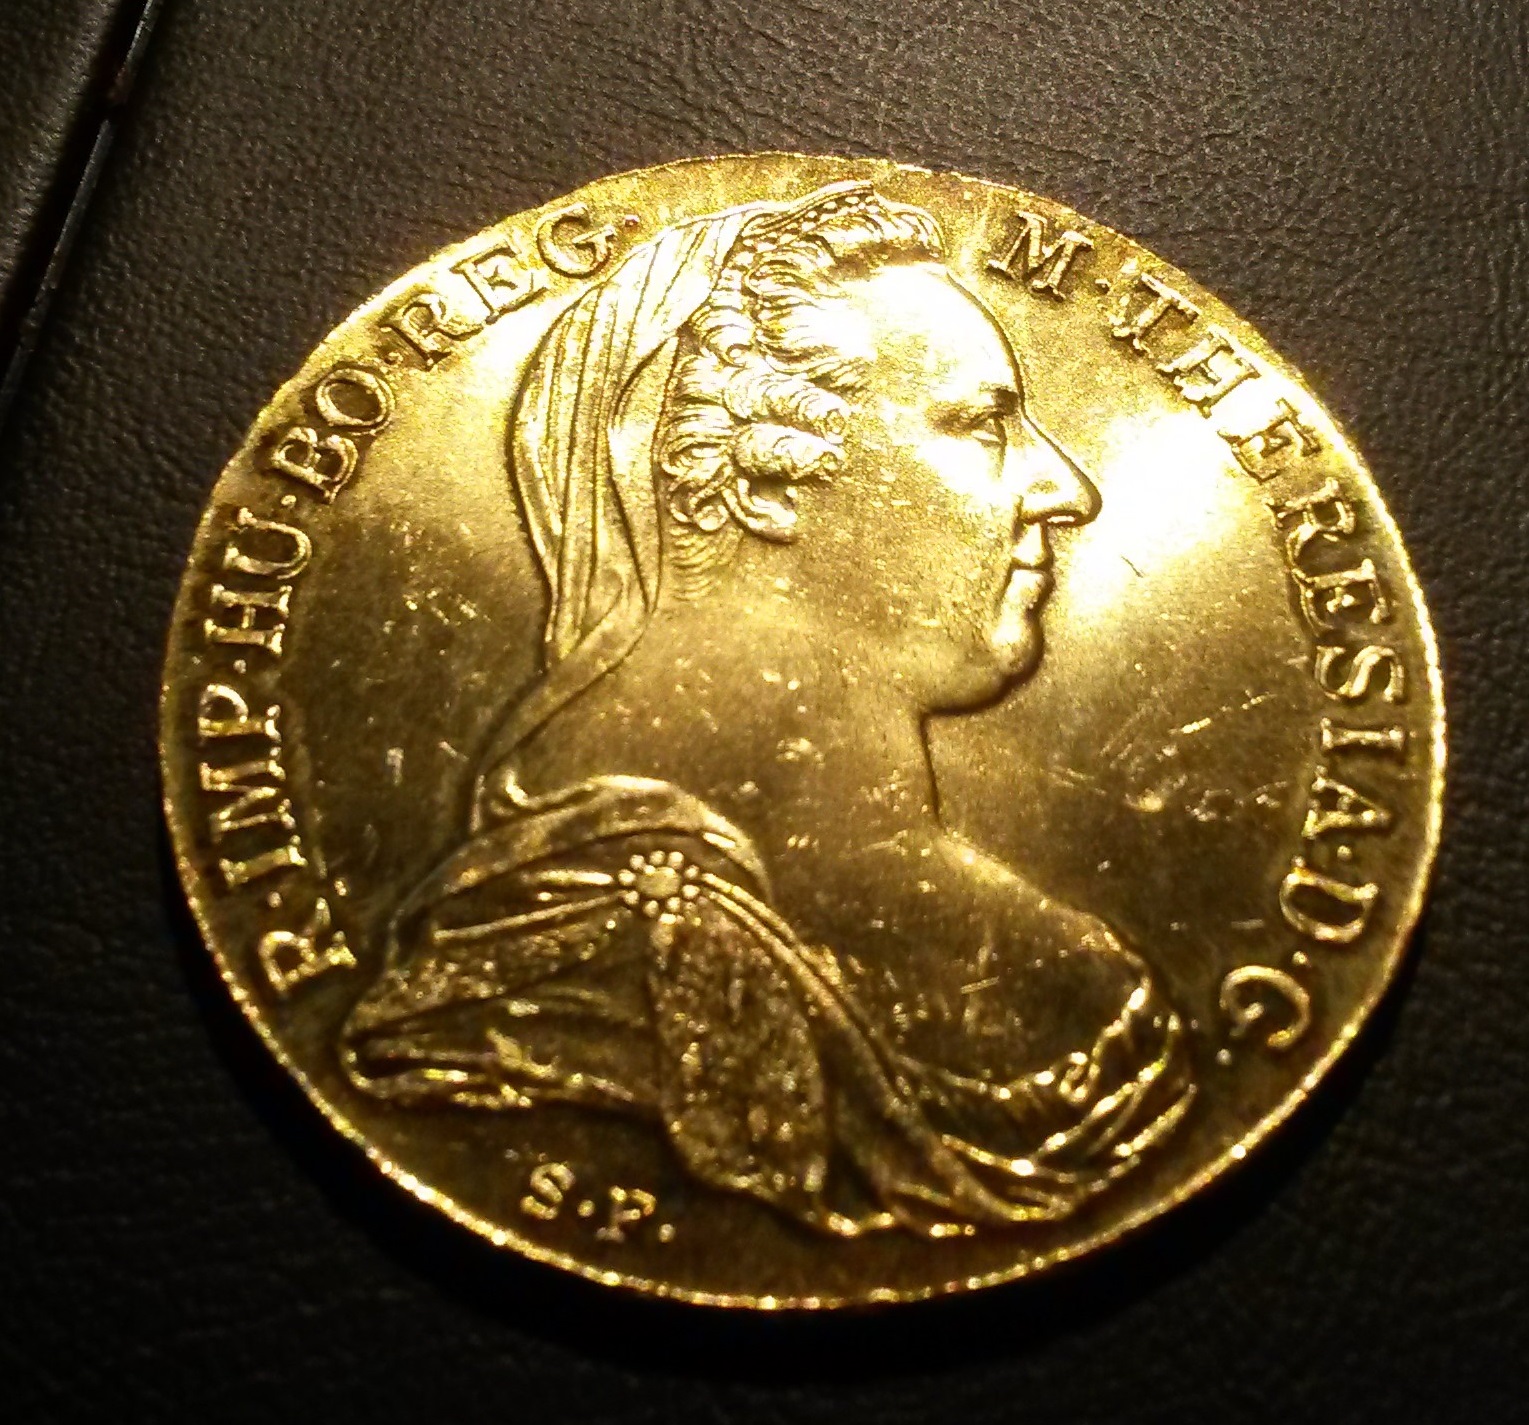 Münze Österreich Maria Theresia in Gold? (Hobby, Münzen, sammeln)